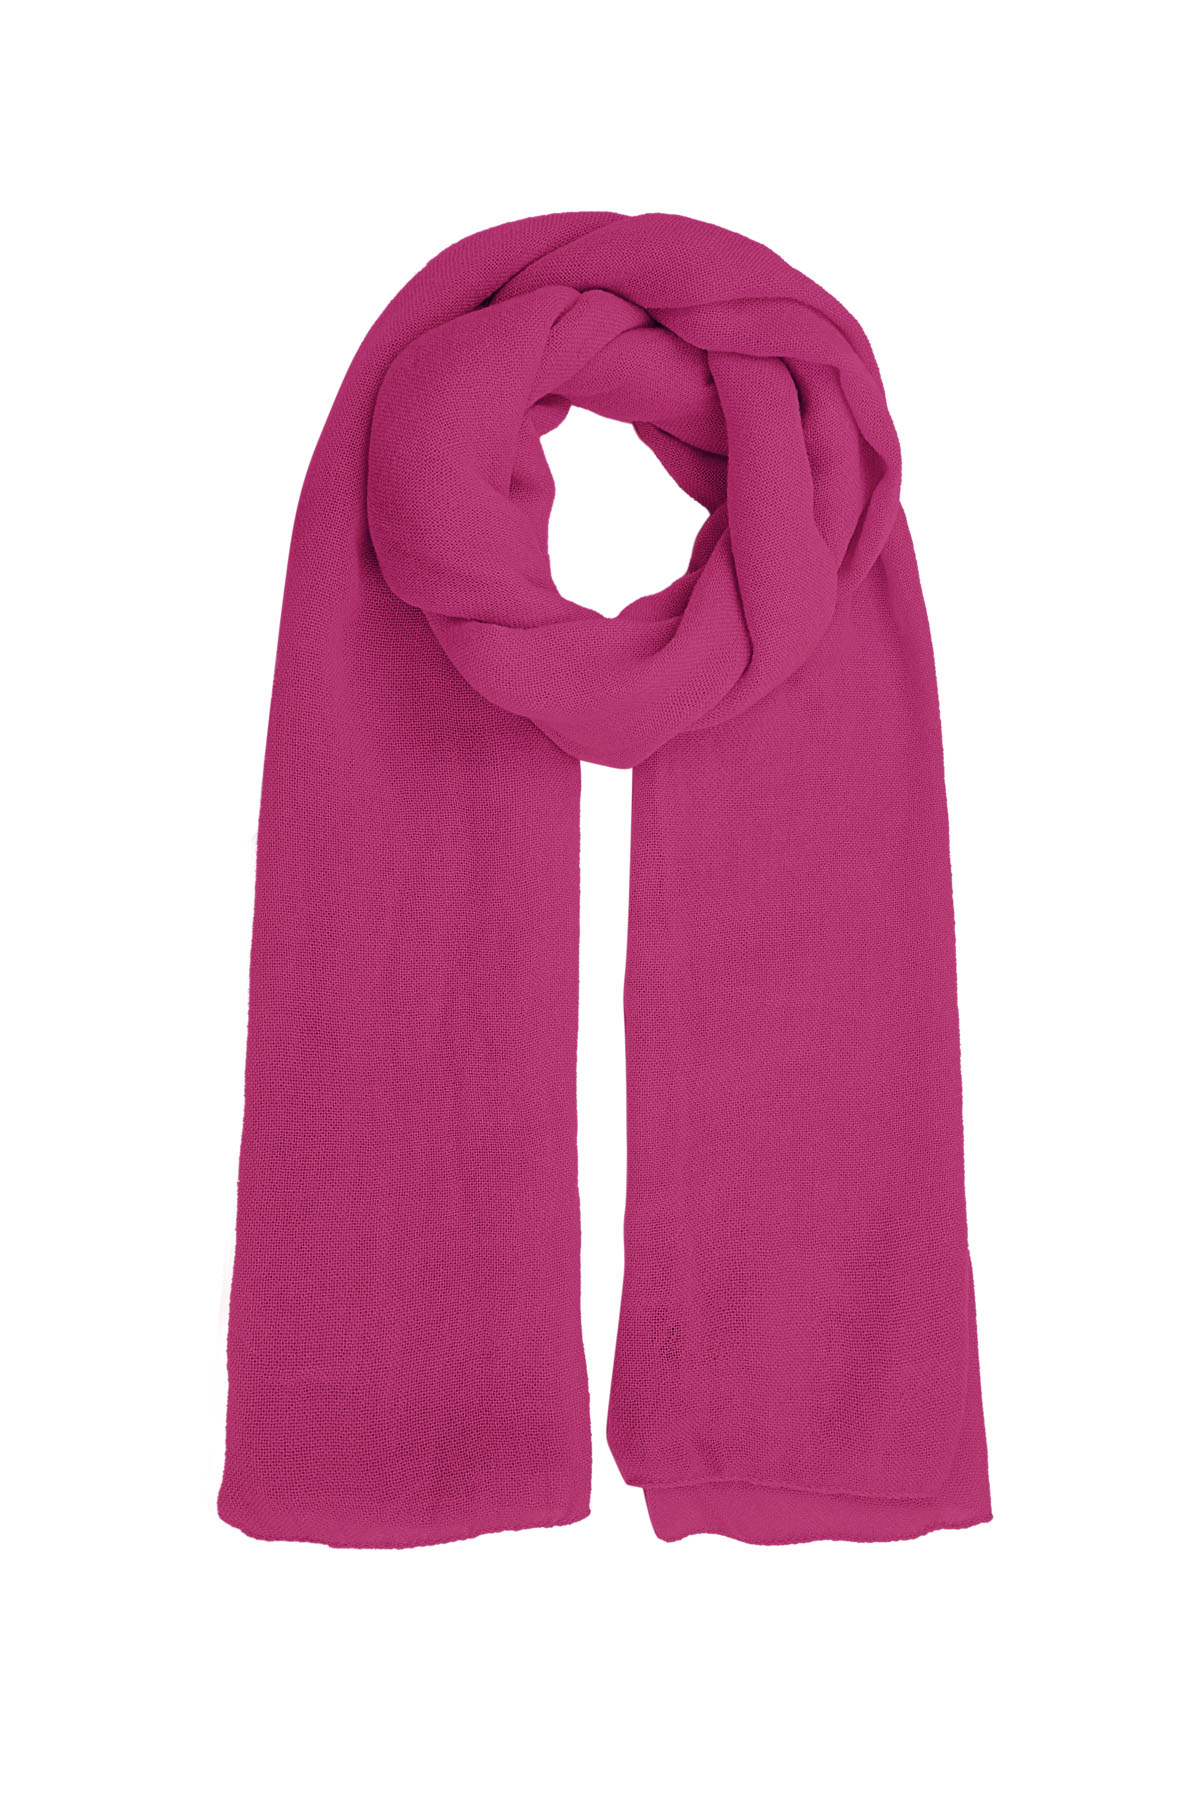 Sjaal effen kleur - rose h5 